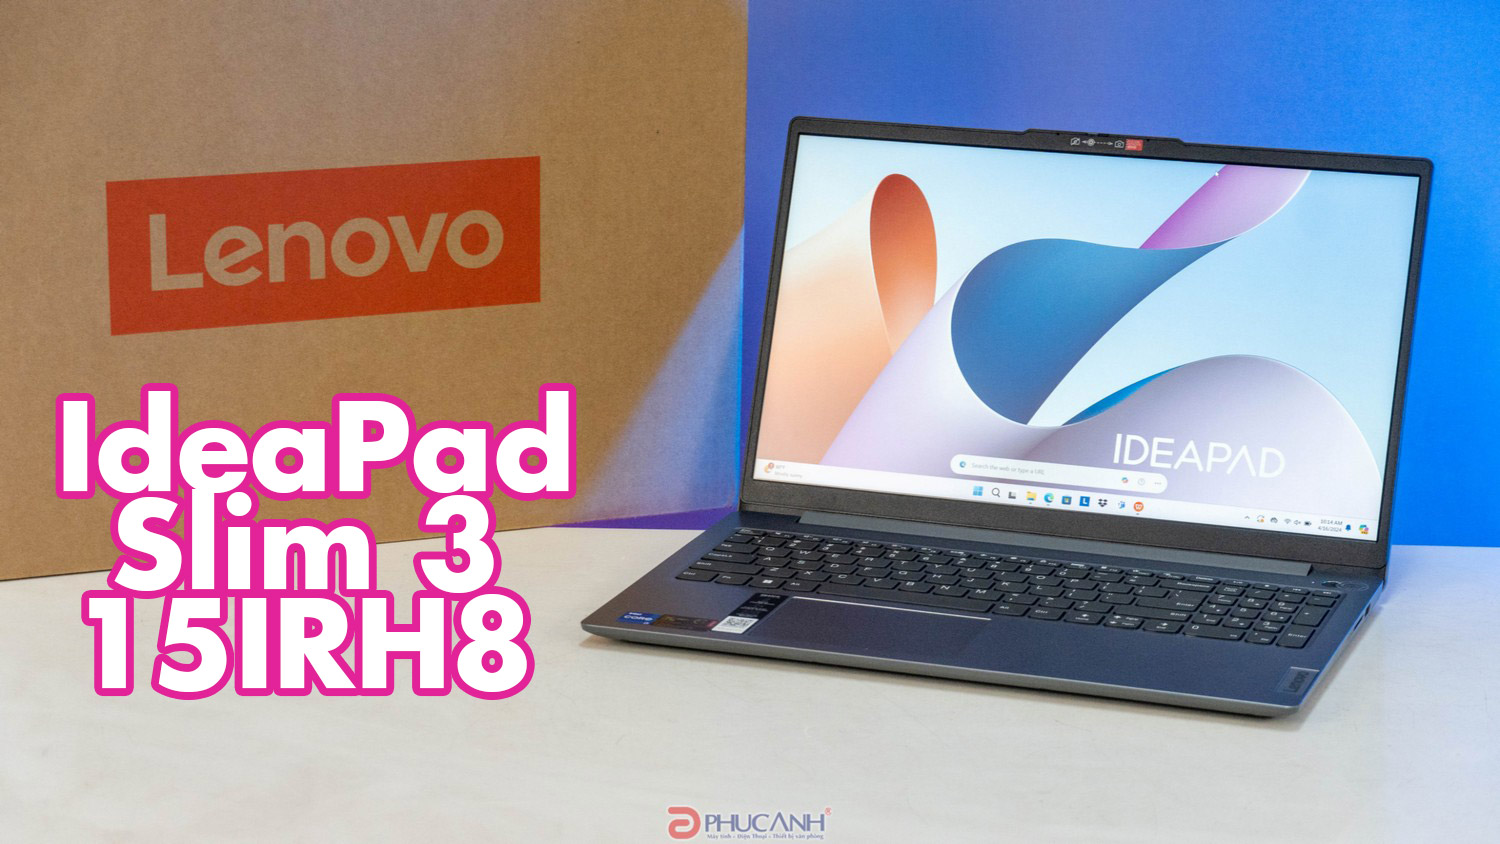 Đánh giá Lenovo IdeaPad Slim 3 15IRH8 - mỏng nhẹ, giá thành tốt, trang bị bộ vi xử lý Intel Core i7 thế hệ 13